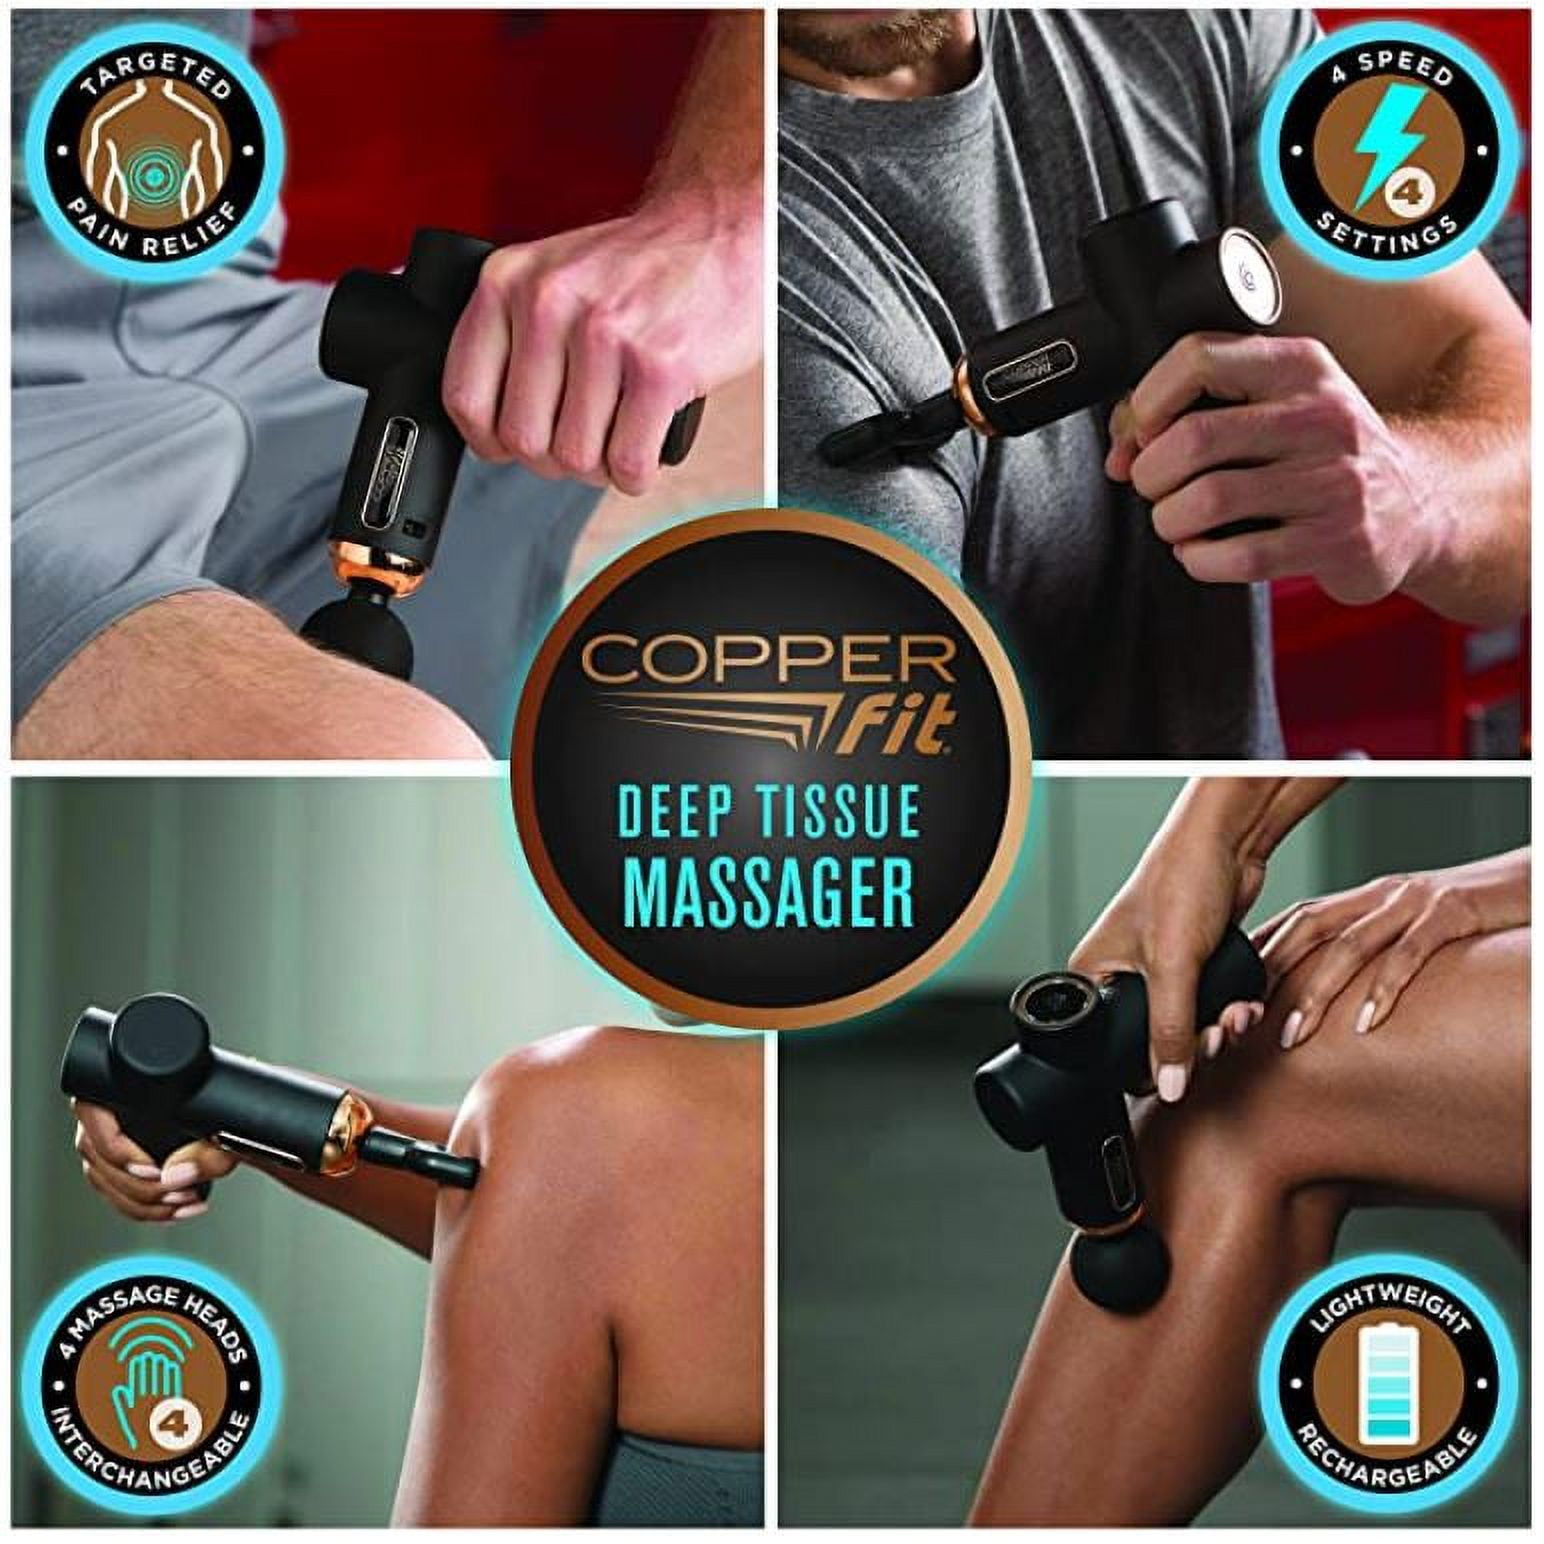 CORN Mini Massage Gun, Handheld Muscle Deep Tissue Massager